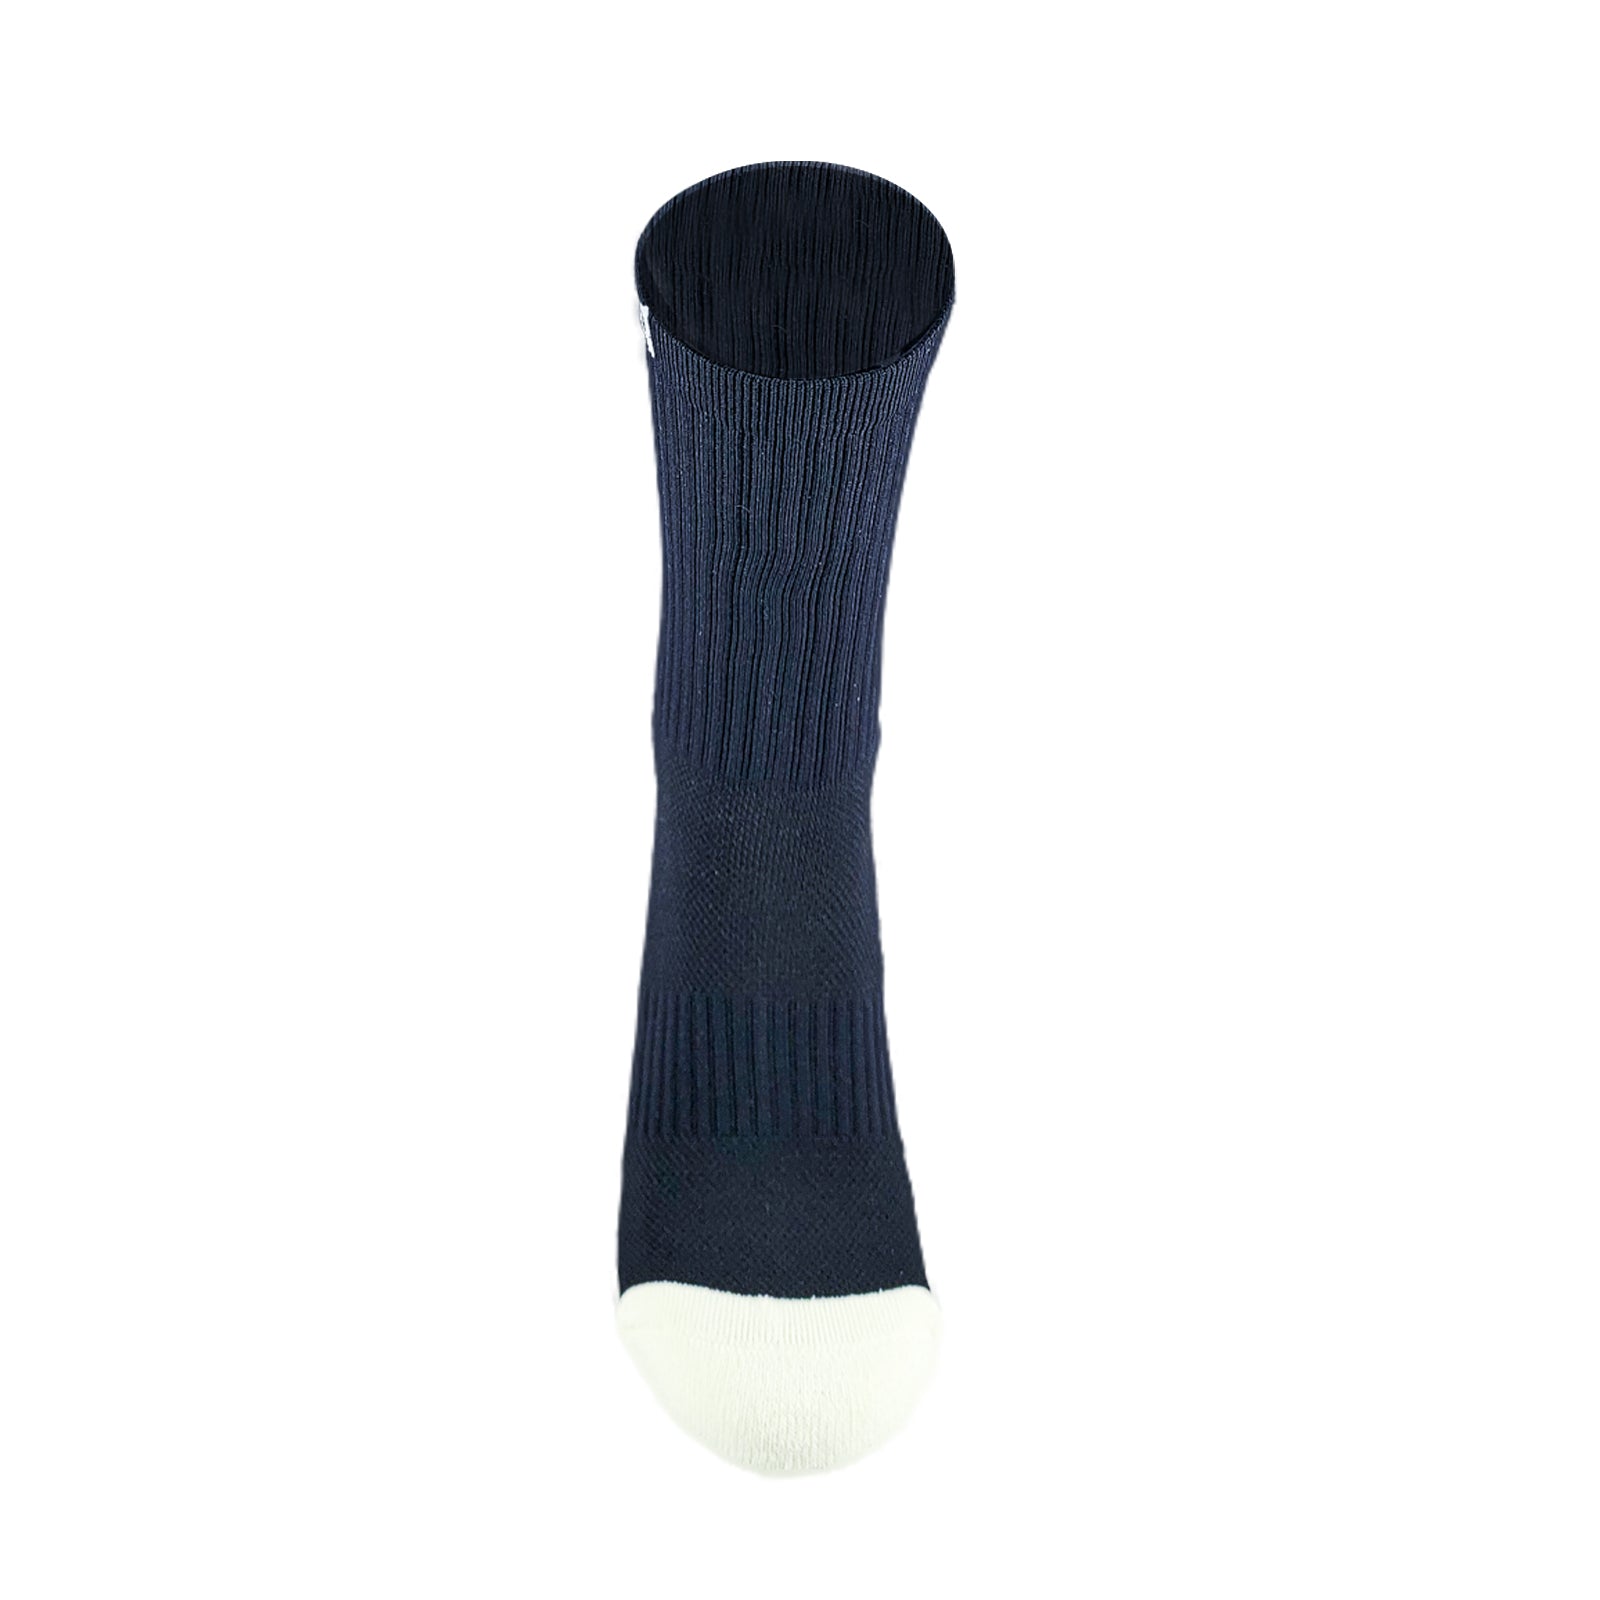 Maestro Grip Soccer Sock Black - Niky's Sports